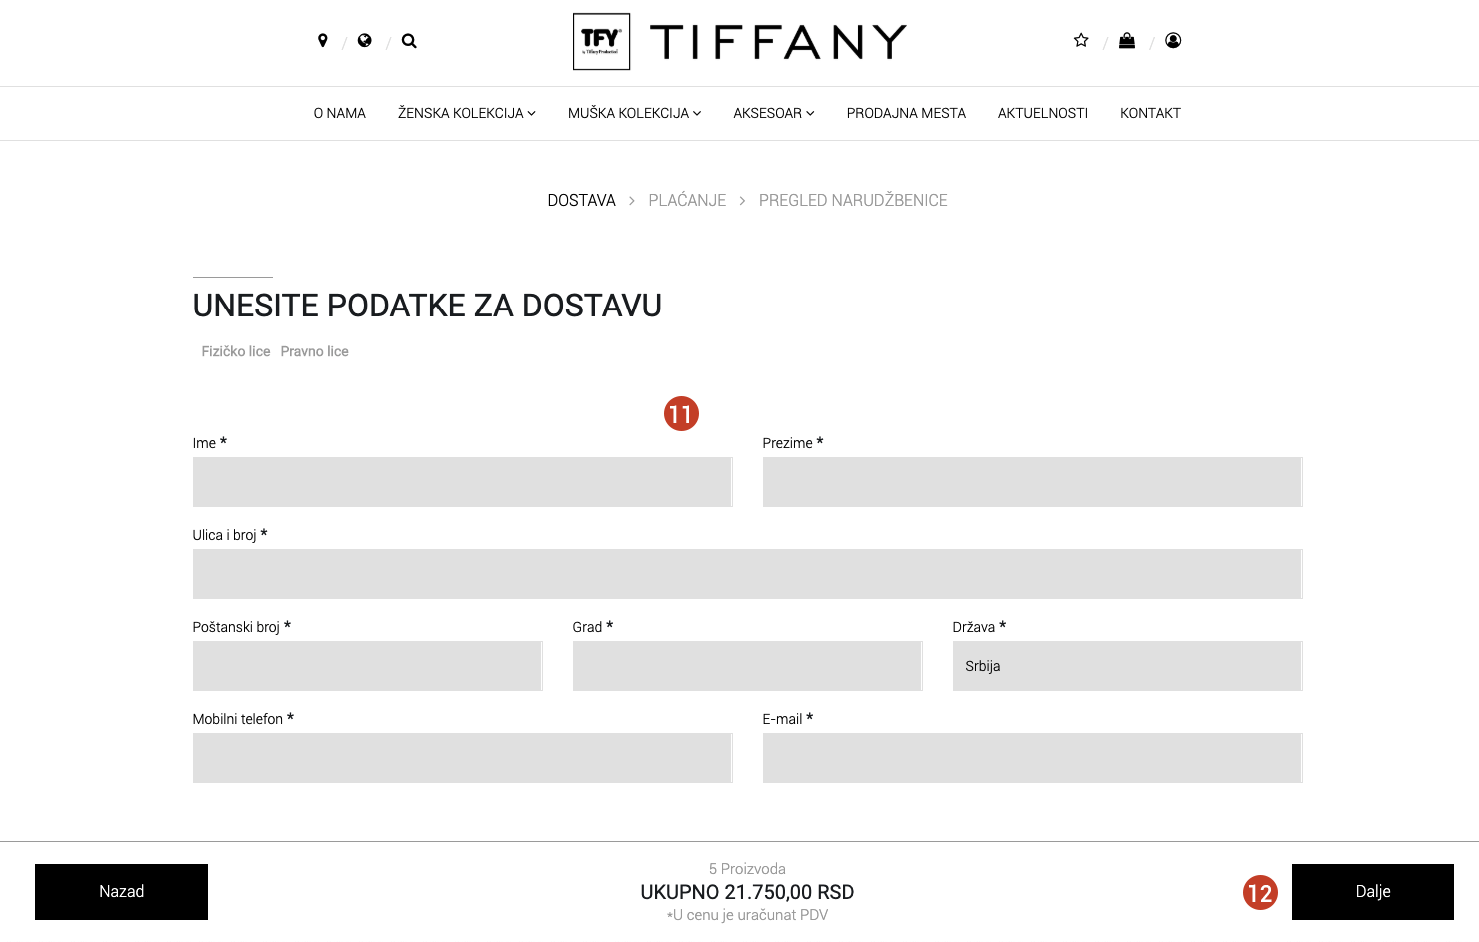 Tiffany Production